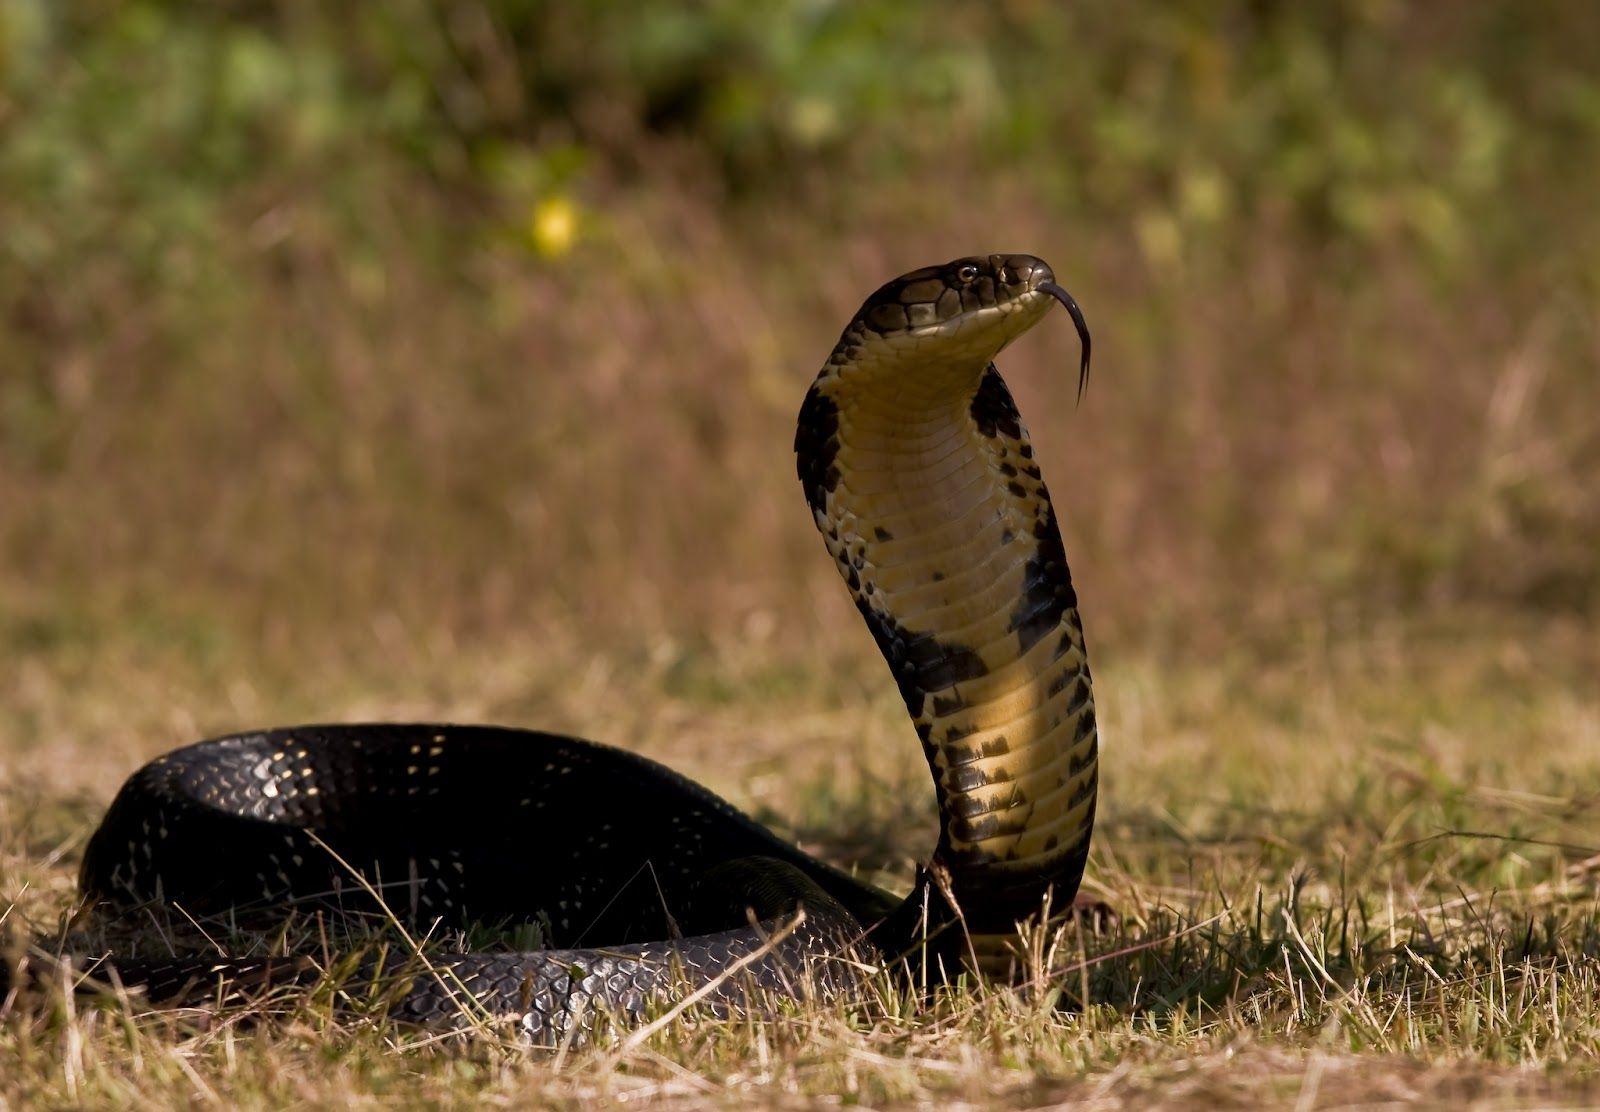 King cobra snake pics